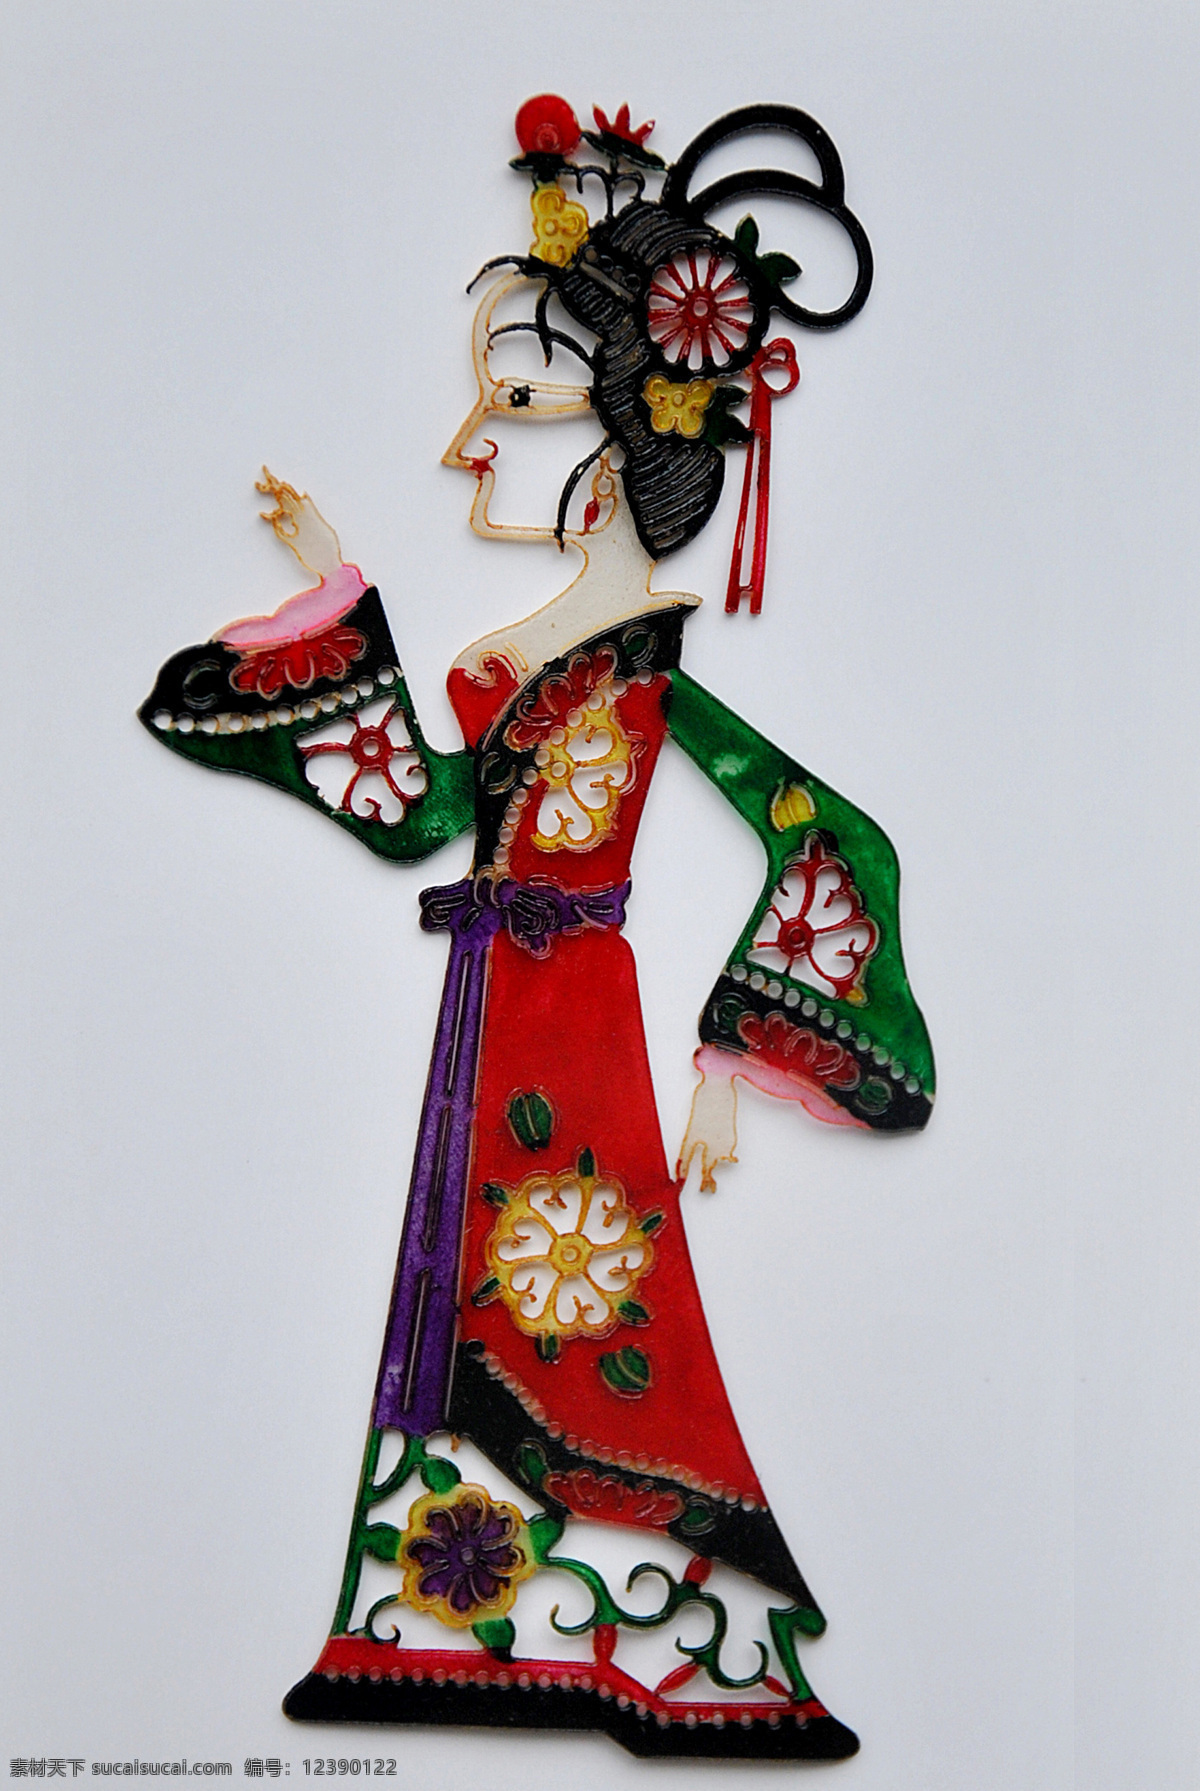 皮影 传统文化 文化艺术